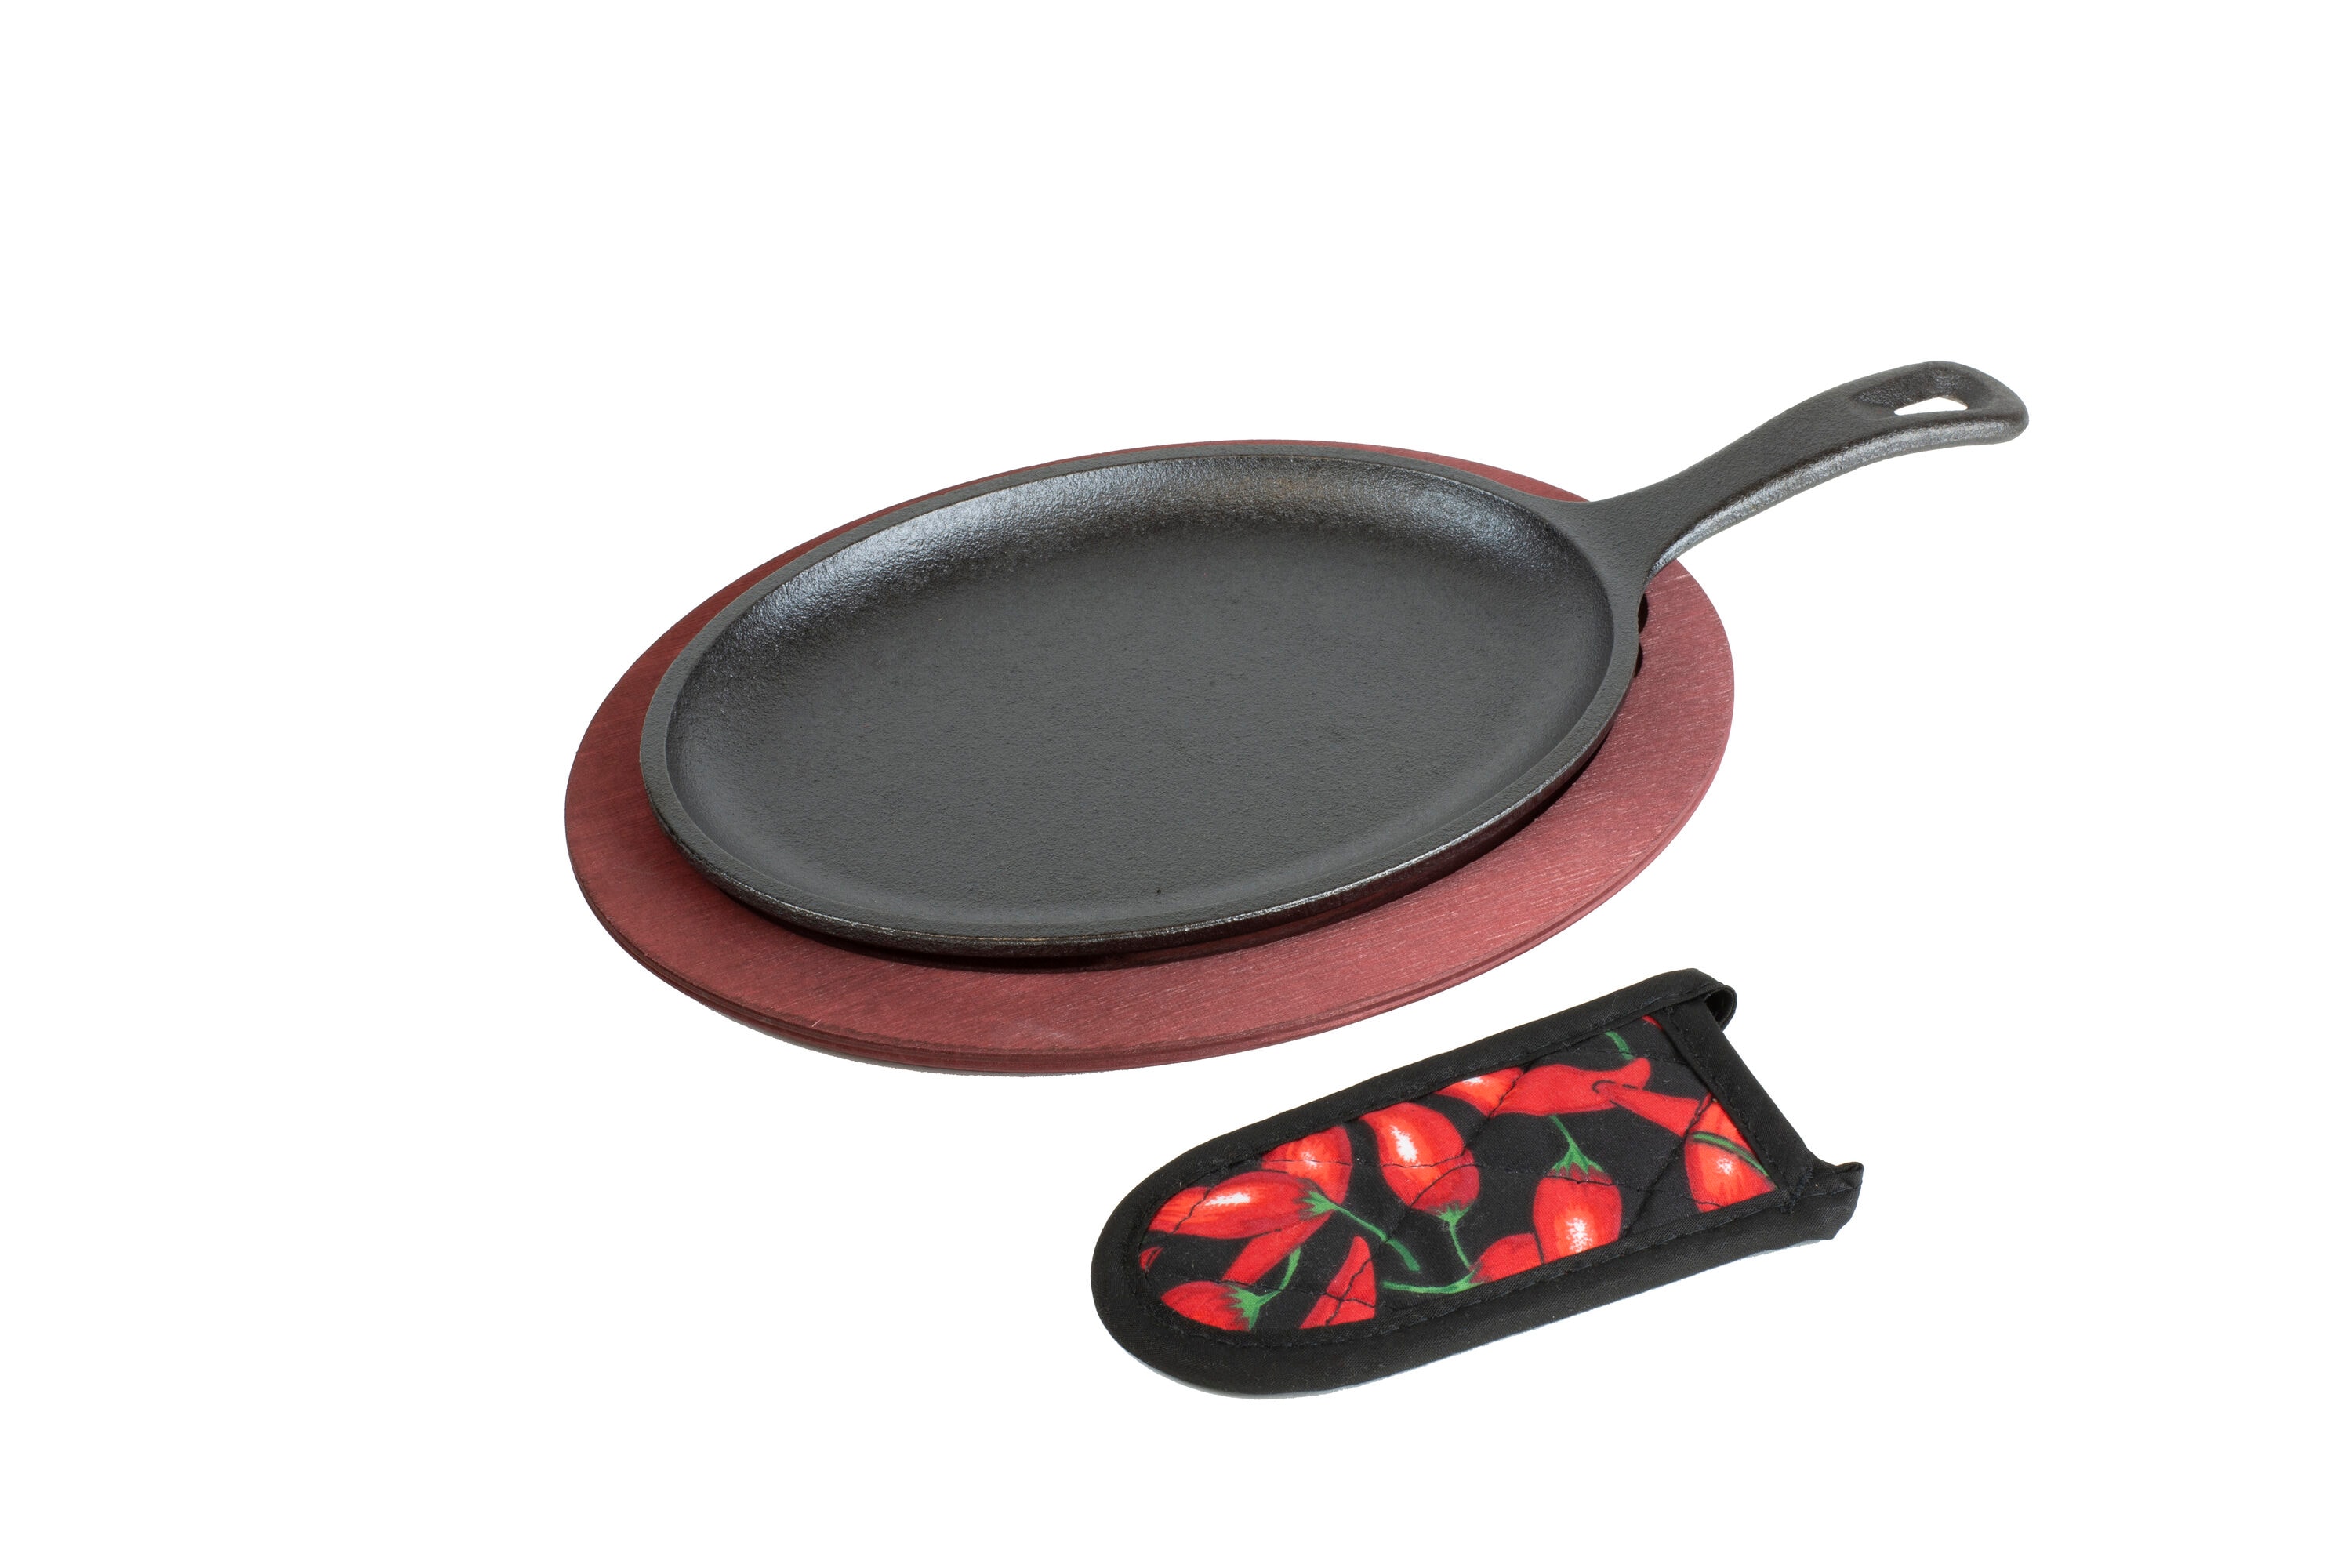 Lodge® Red & Black Pan Scraper Set